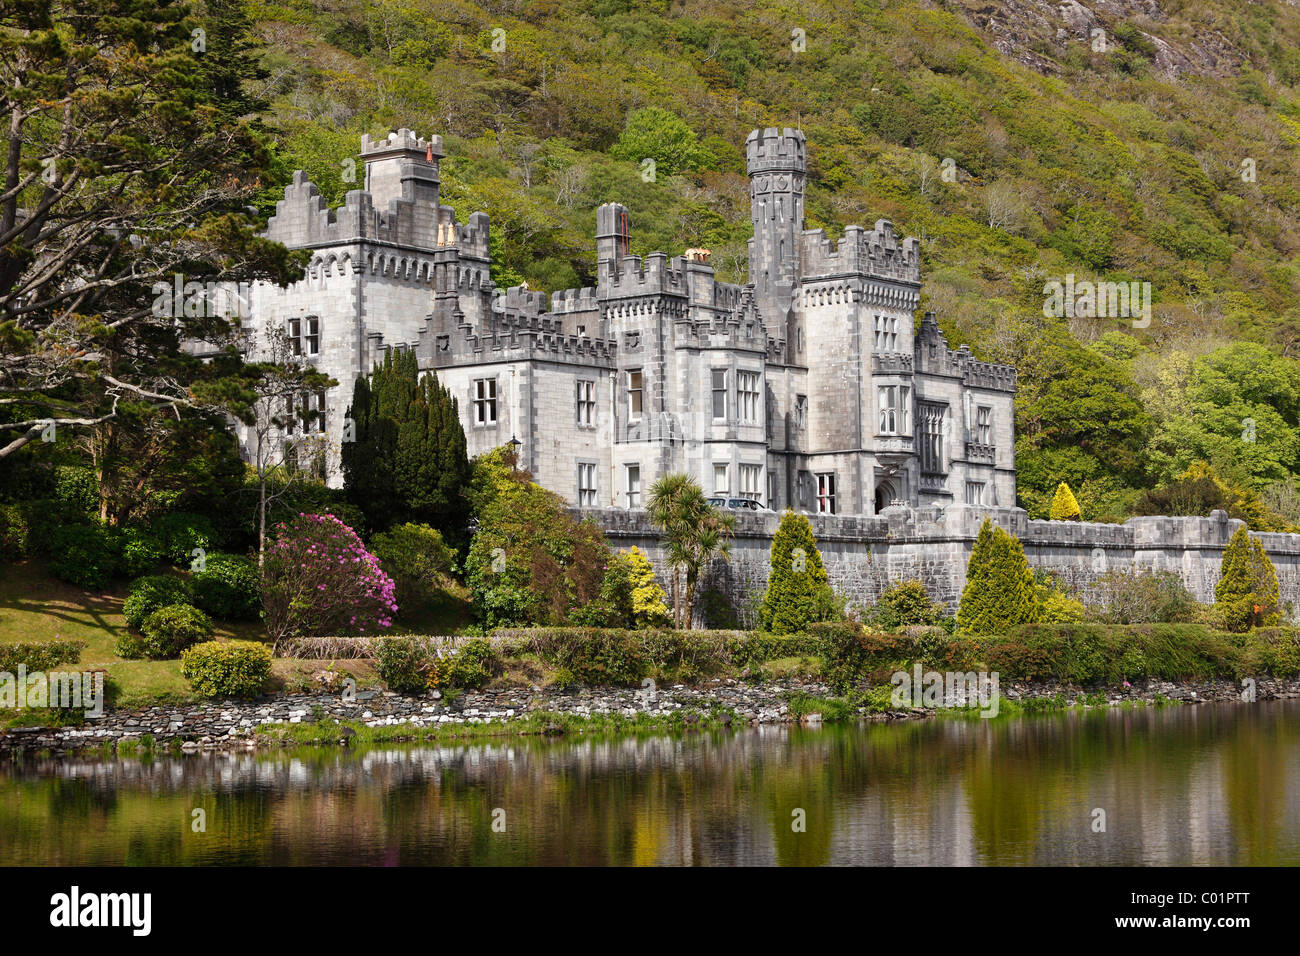 La abadía de Kylemore, Connemara, Condado de Galway, República de Irlanda, Europa Foto de stock